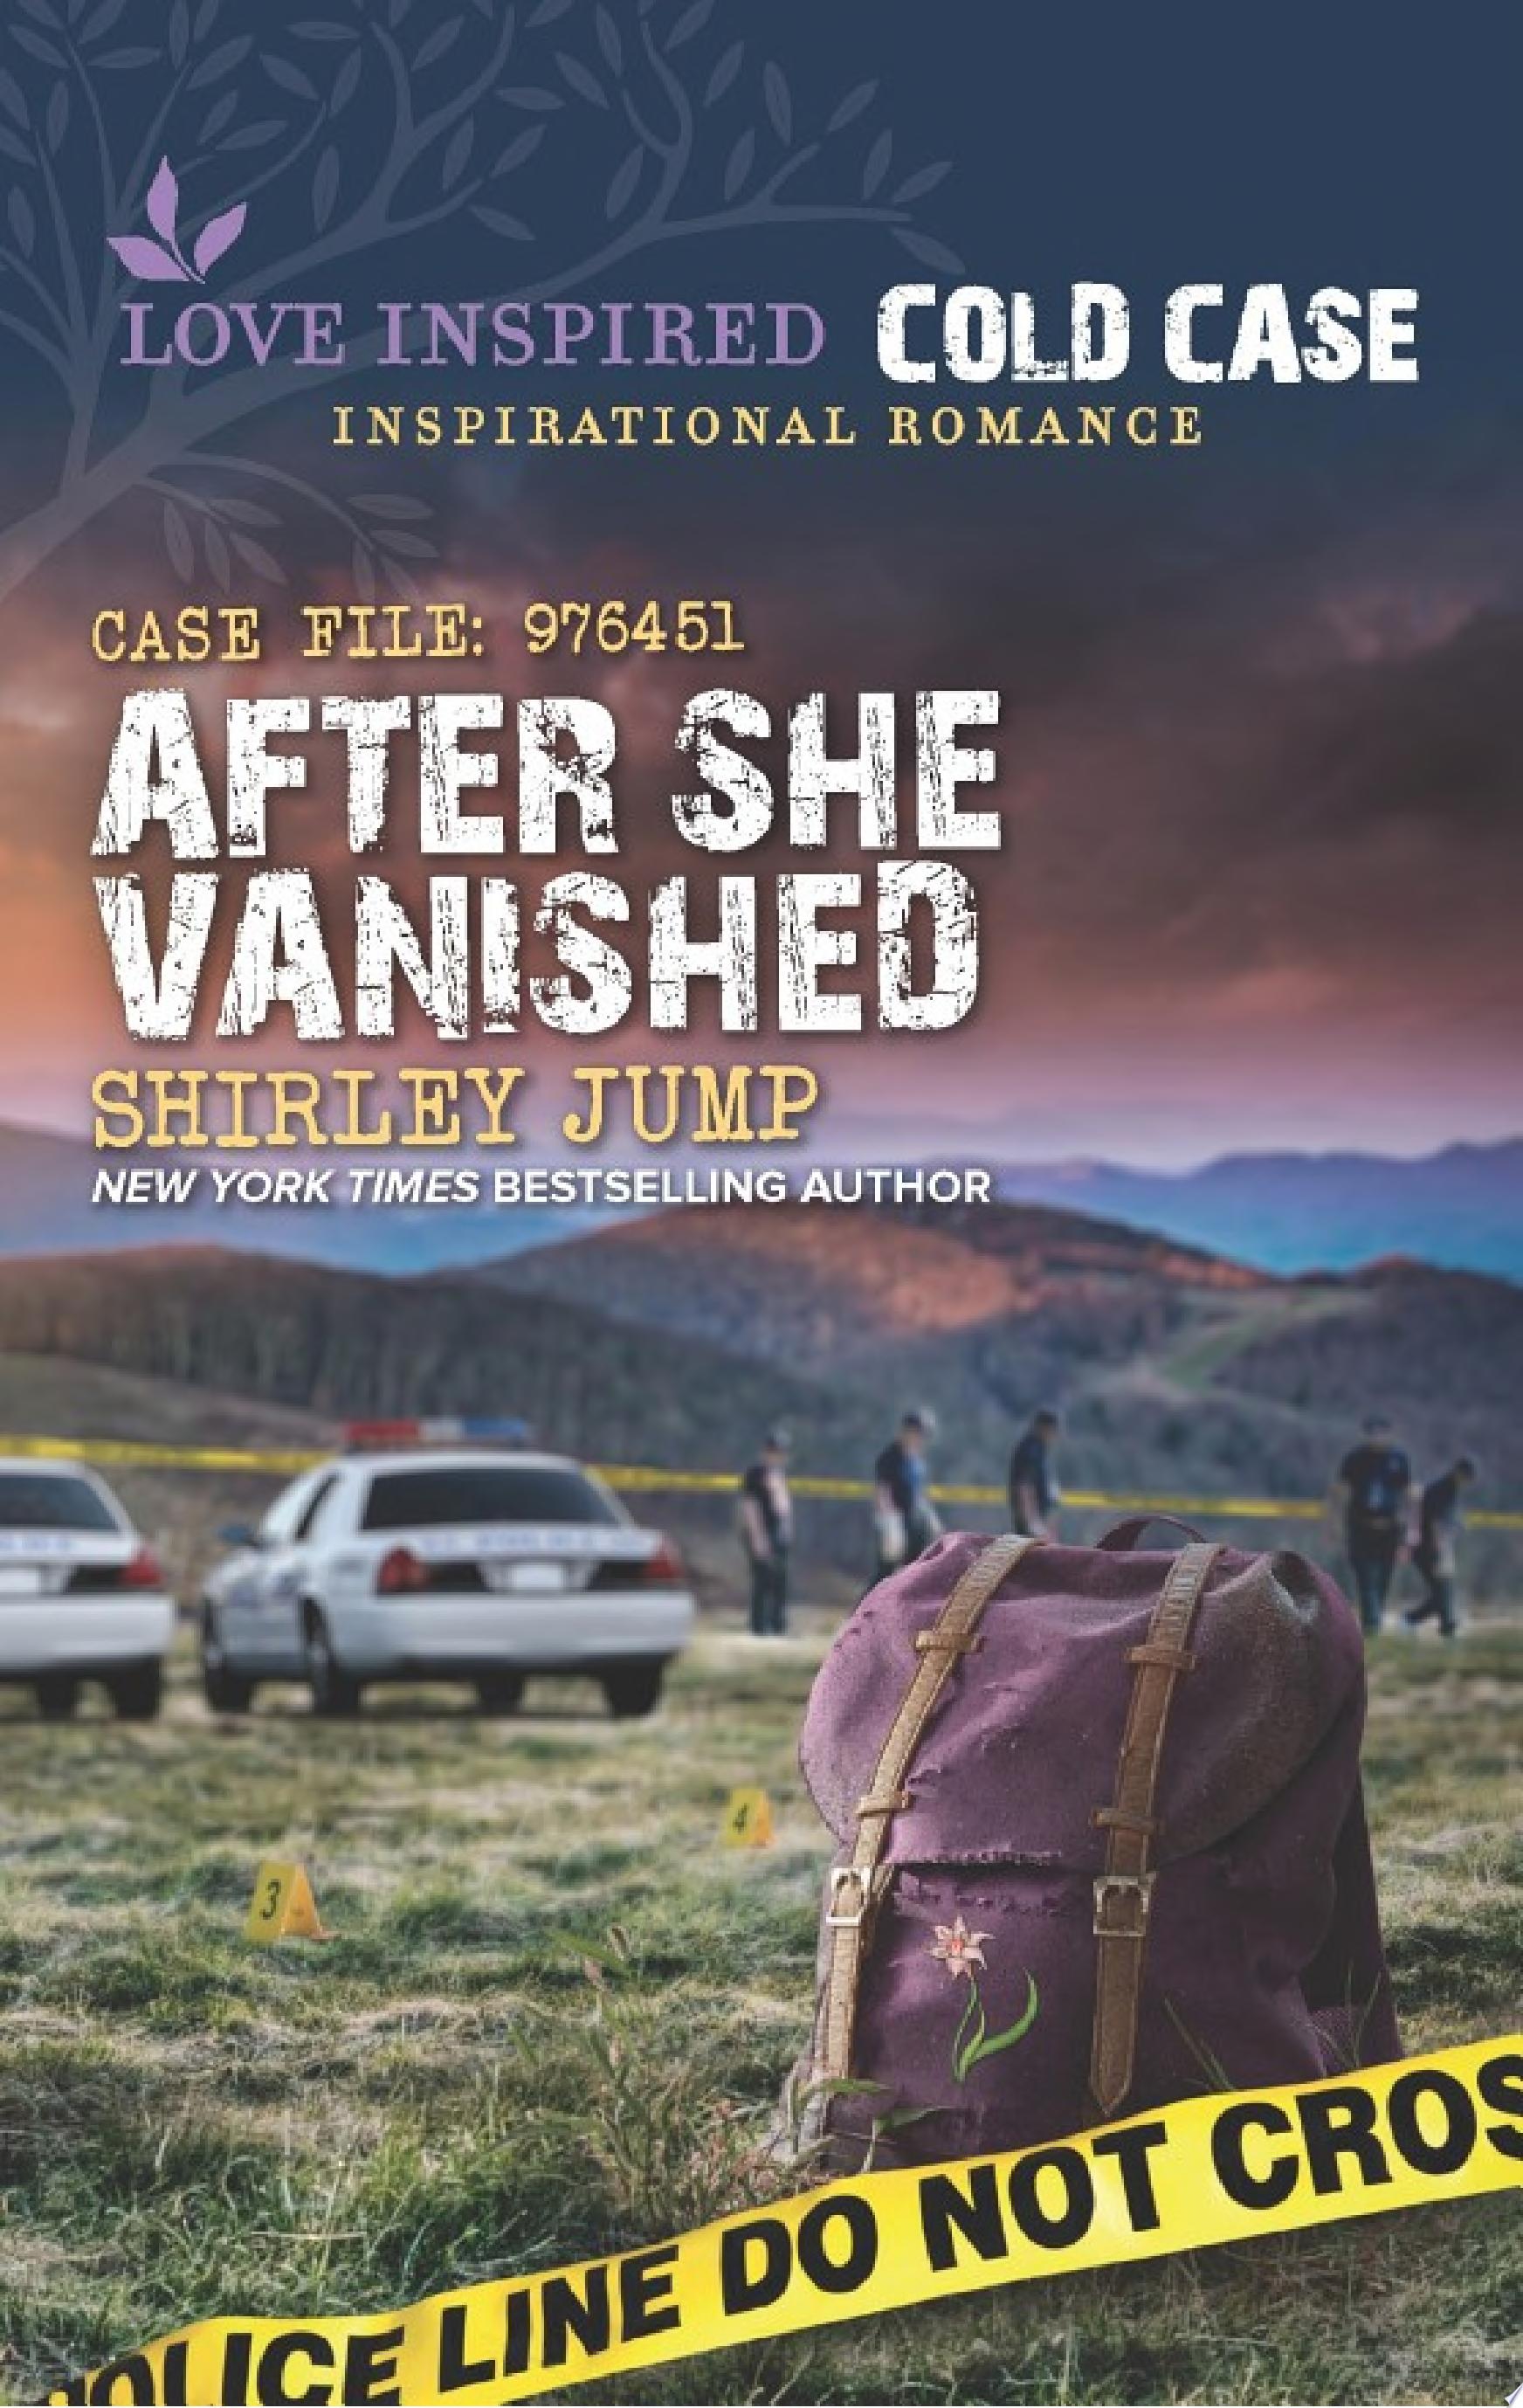 Image for "After She Vanished"